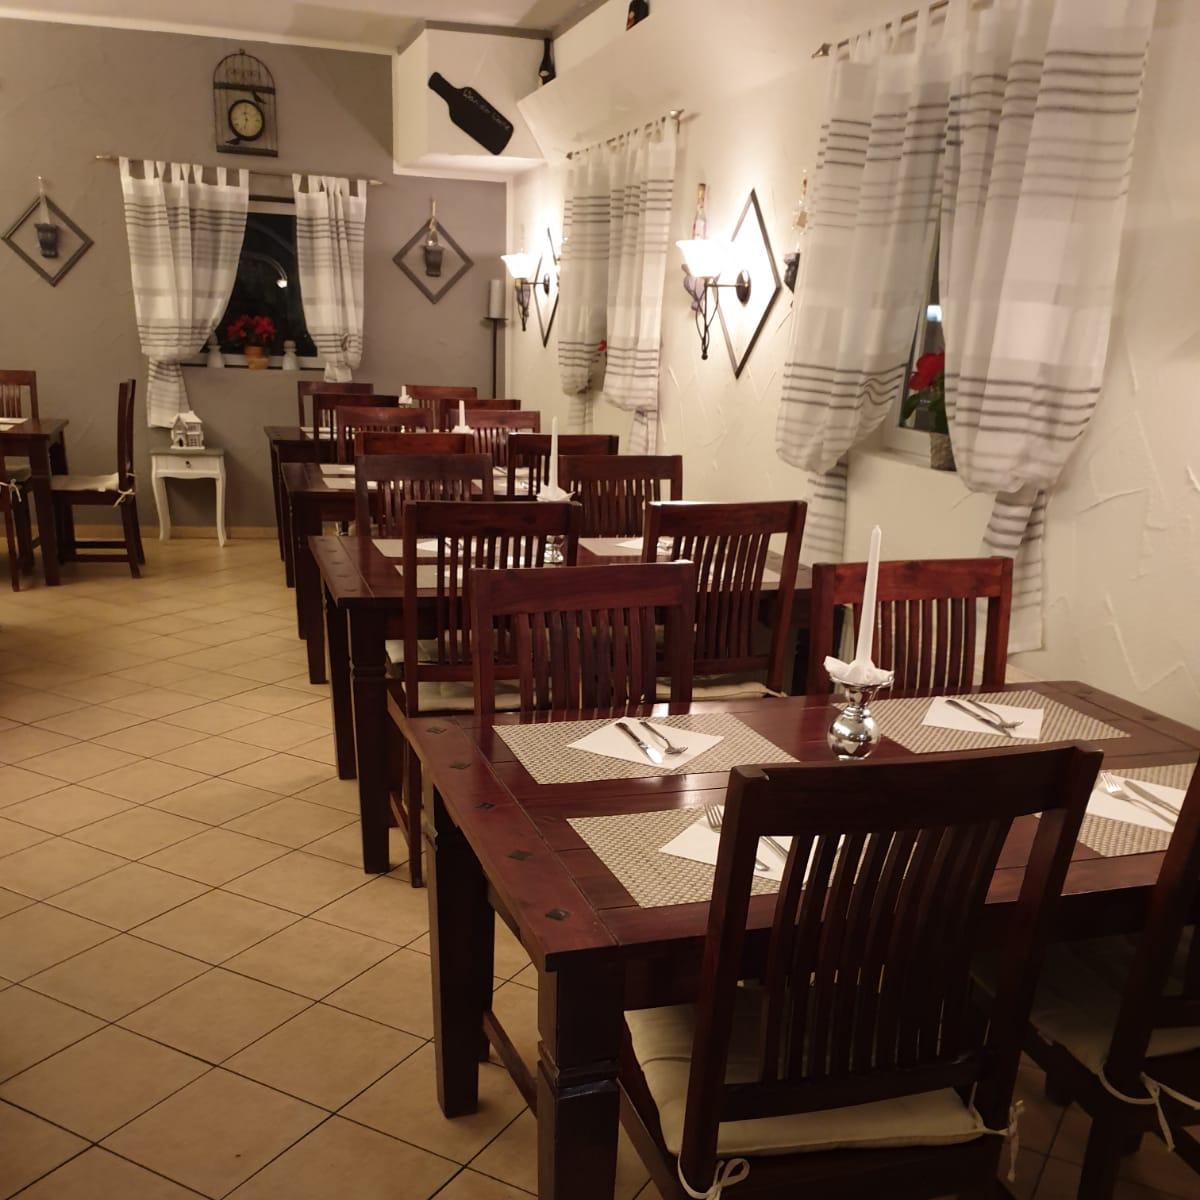 Restaurant "Ristorante La Villetta bei Salvatore Feo" in  Aschaffenburg